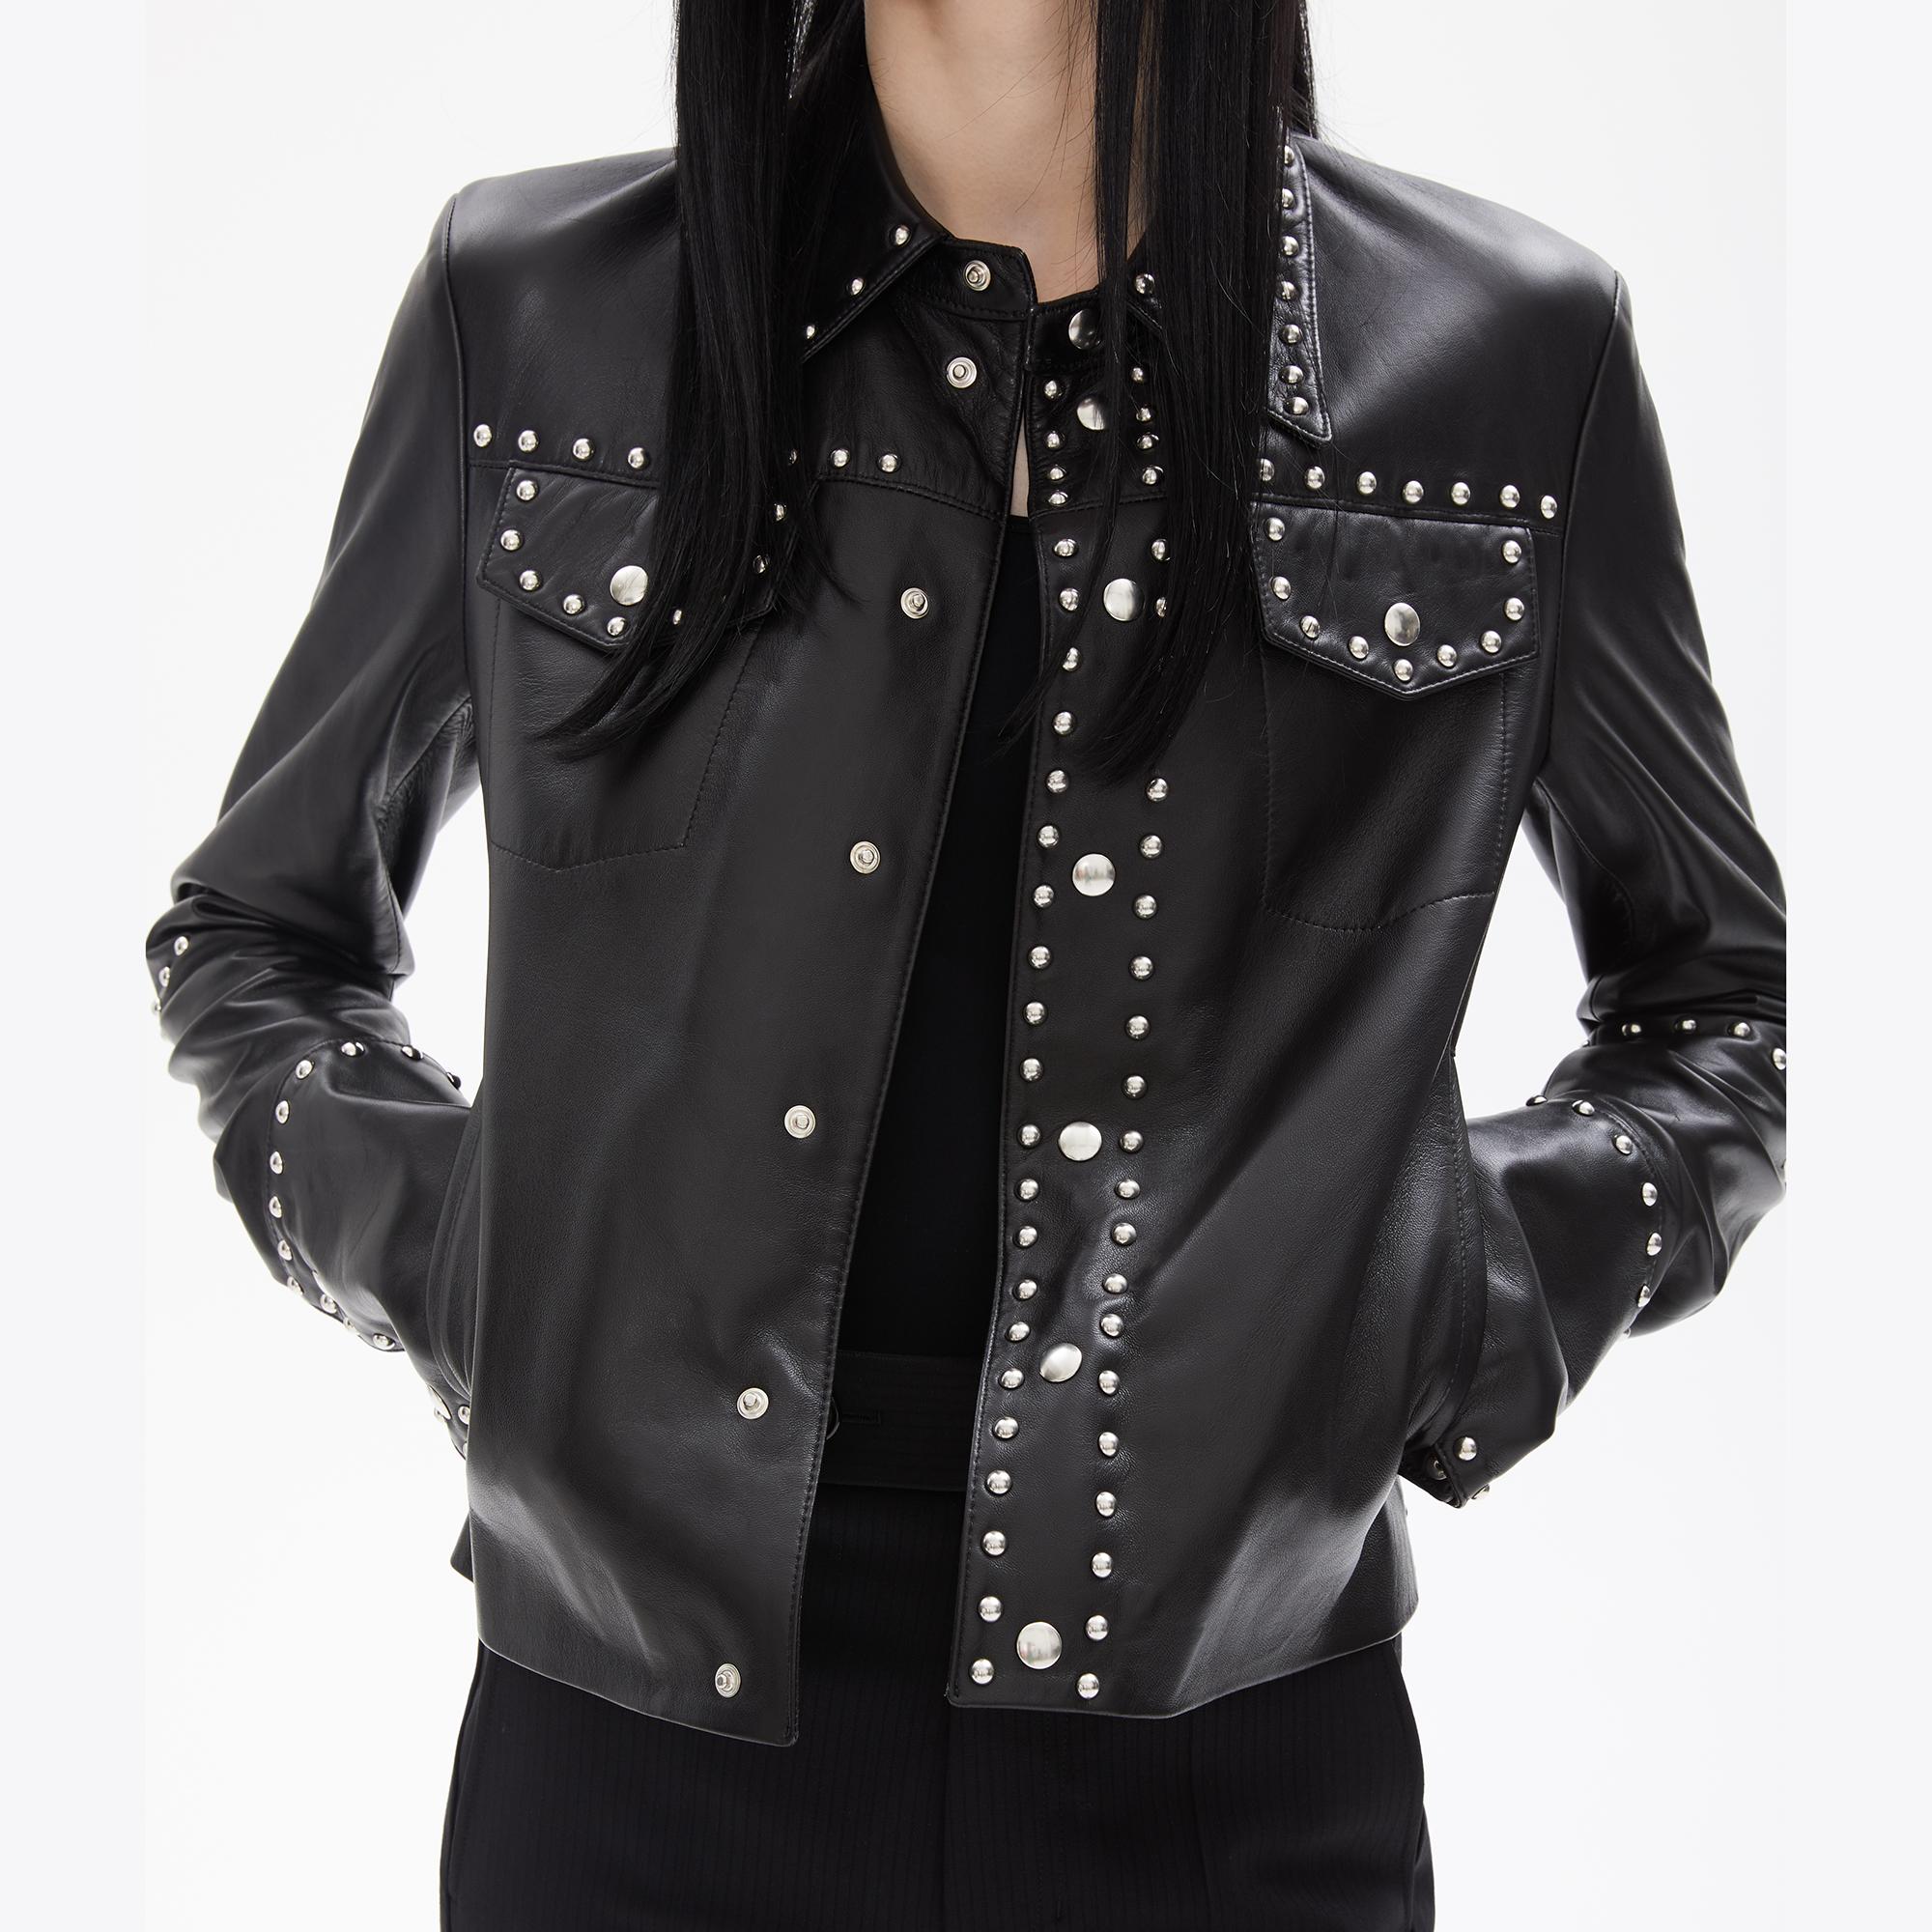 Helmut Lang Black Studded Leather Jacket | WWW.HELMUTLANG.COM